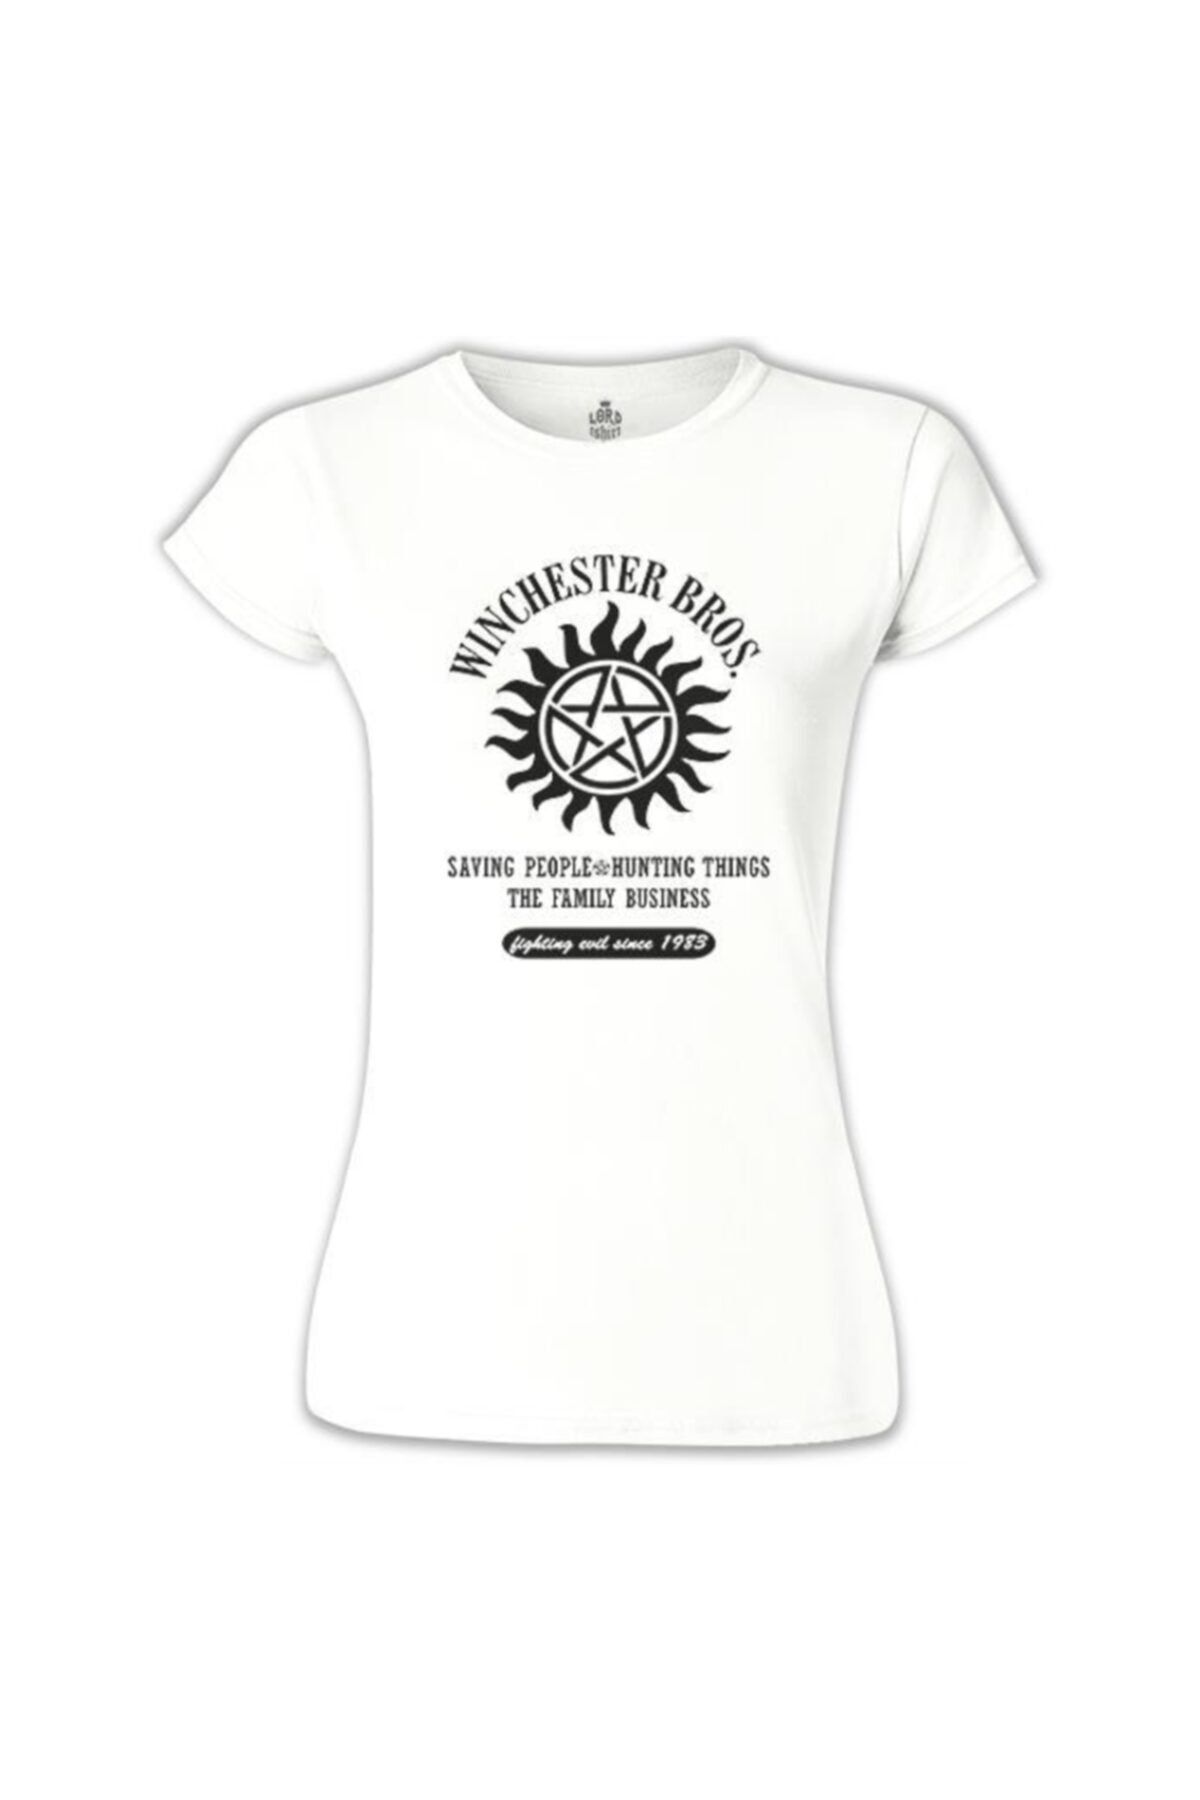 Lord T-Shirt Supernatural - Winchester Bros. Beyaz Bayan Tshirt